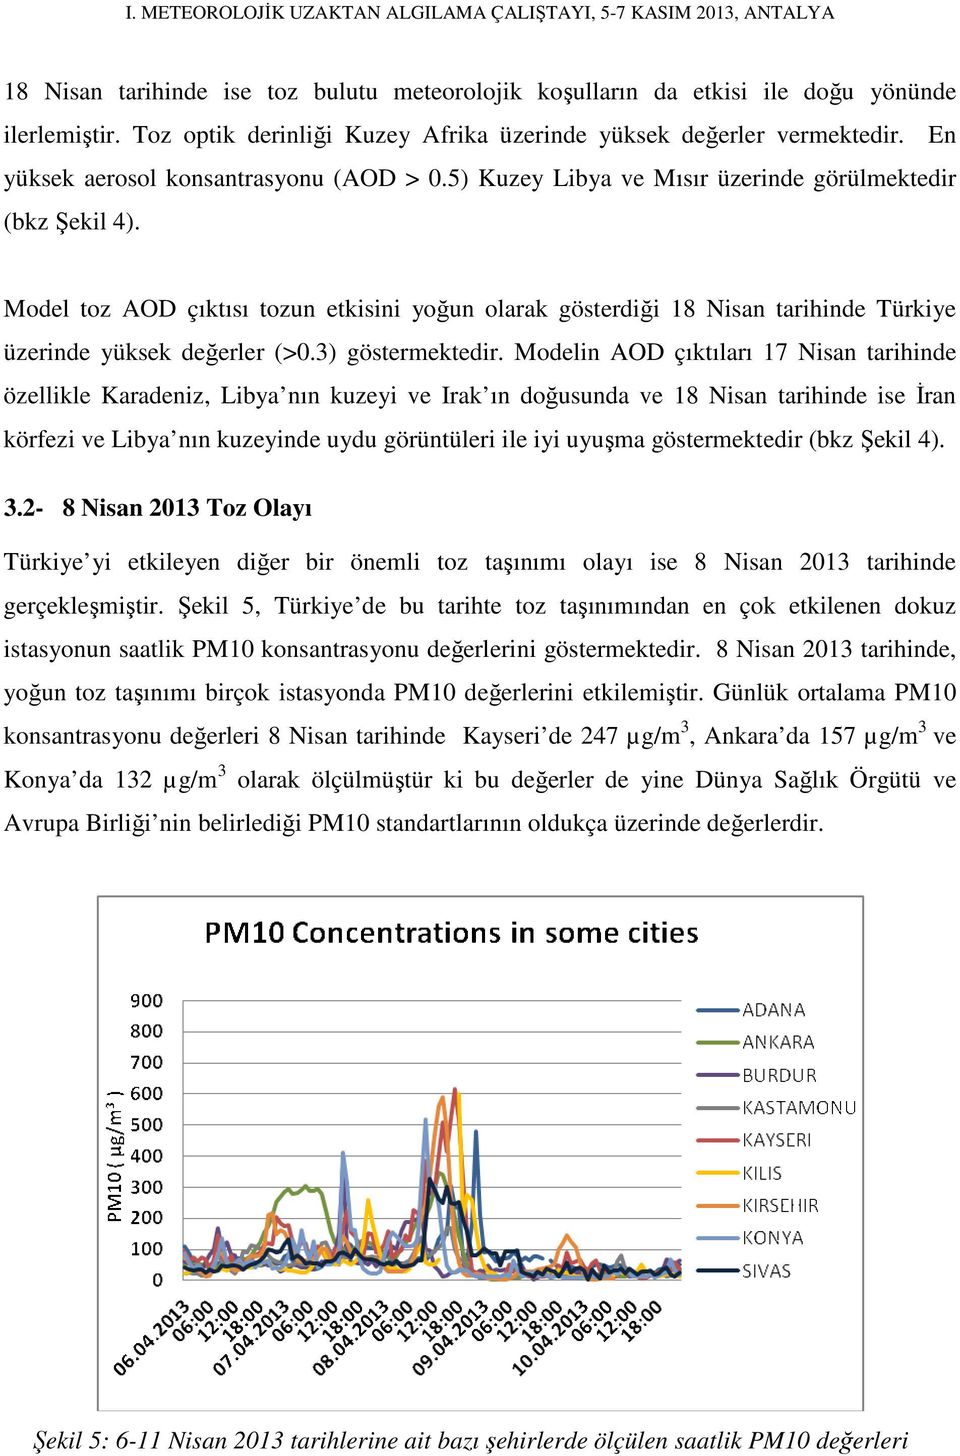 Model toz AOD çıktısı tozun etkisini yoğun olarak gösterdiği 18 Nisan tarihinde Türkiye üzerinde yüksek değerler (>0.3) göstermektedir.